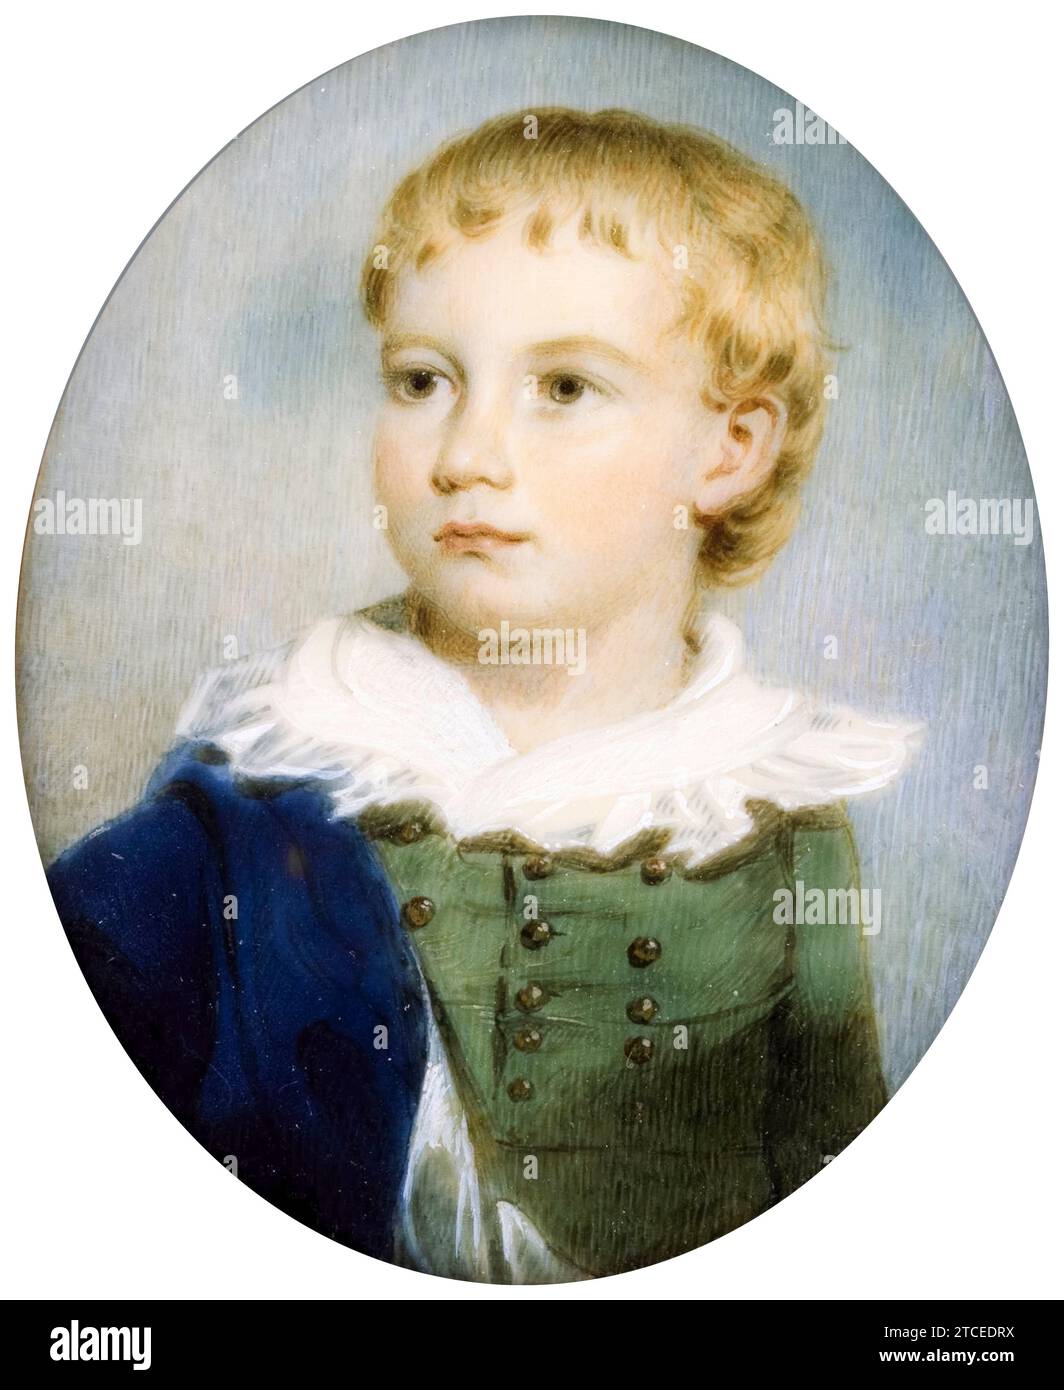 James Nixon, Portrait of a Boy, portrait miniature aquarelle sur ivoire, 1805-1825 Banque D'Images